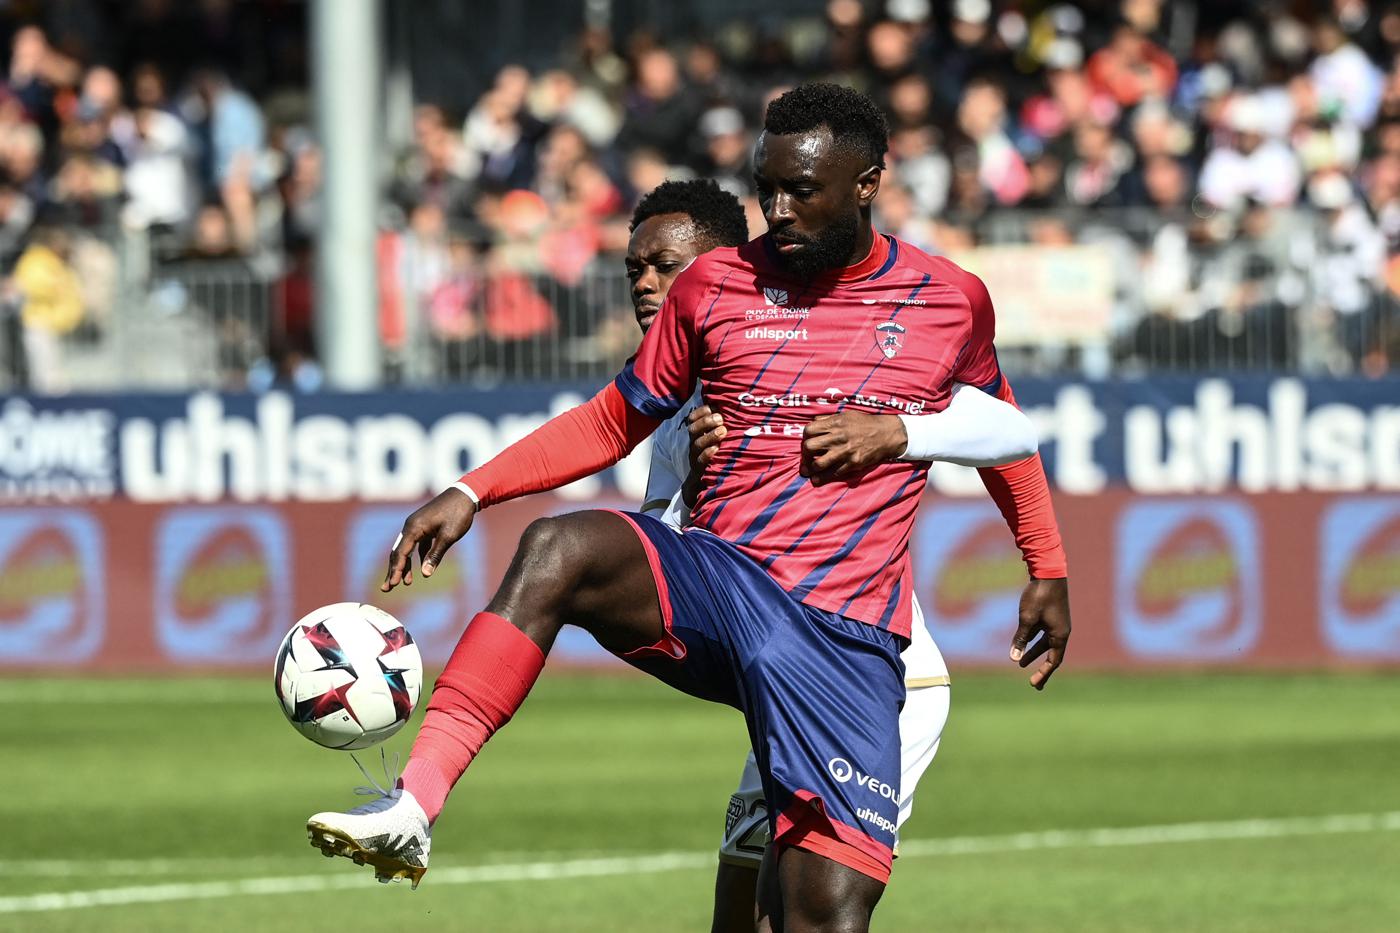 Clermont – Angers – 2:1. Mistrzostwa Francji, 31. runda. Przegląd meczu, statystyki